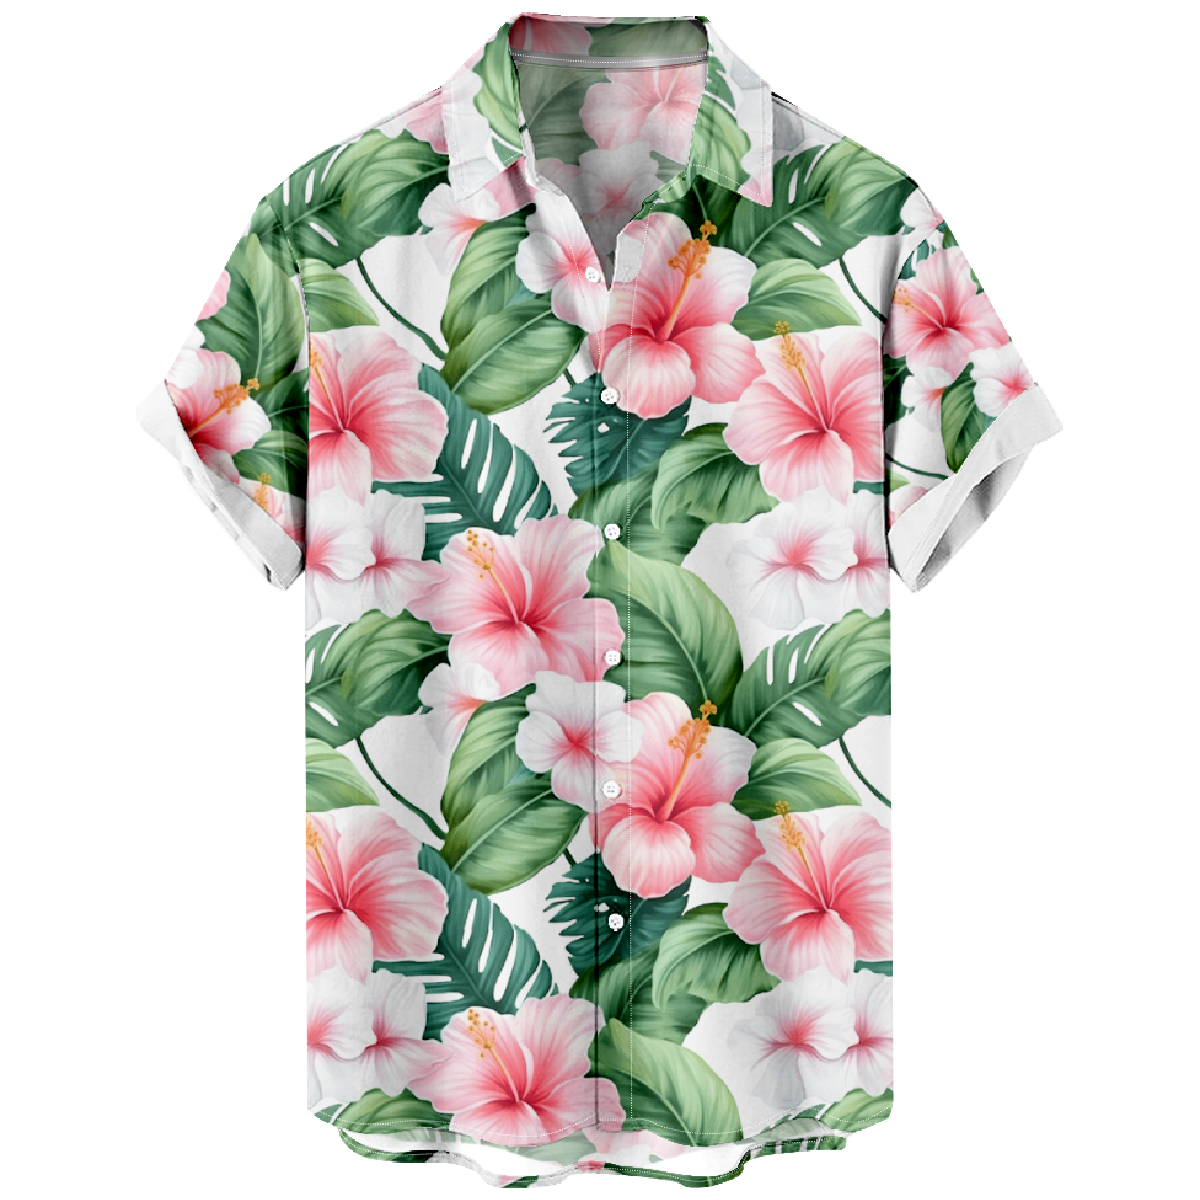 Men's Hawaiian Shirt Hibiscus Flower Print Button Shirt Summer Cool Mens Top